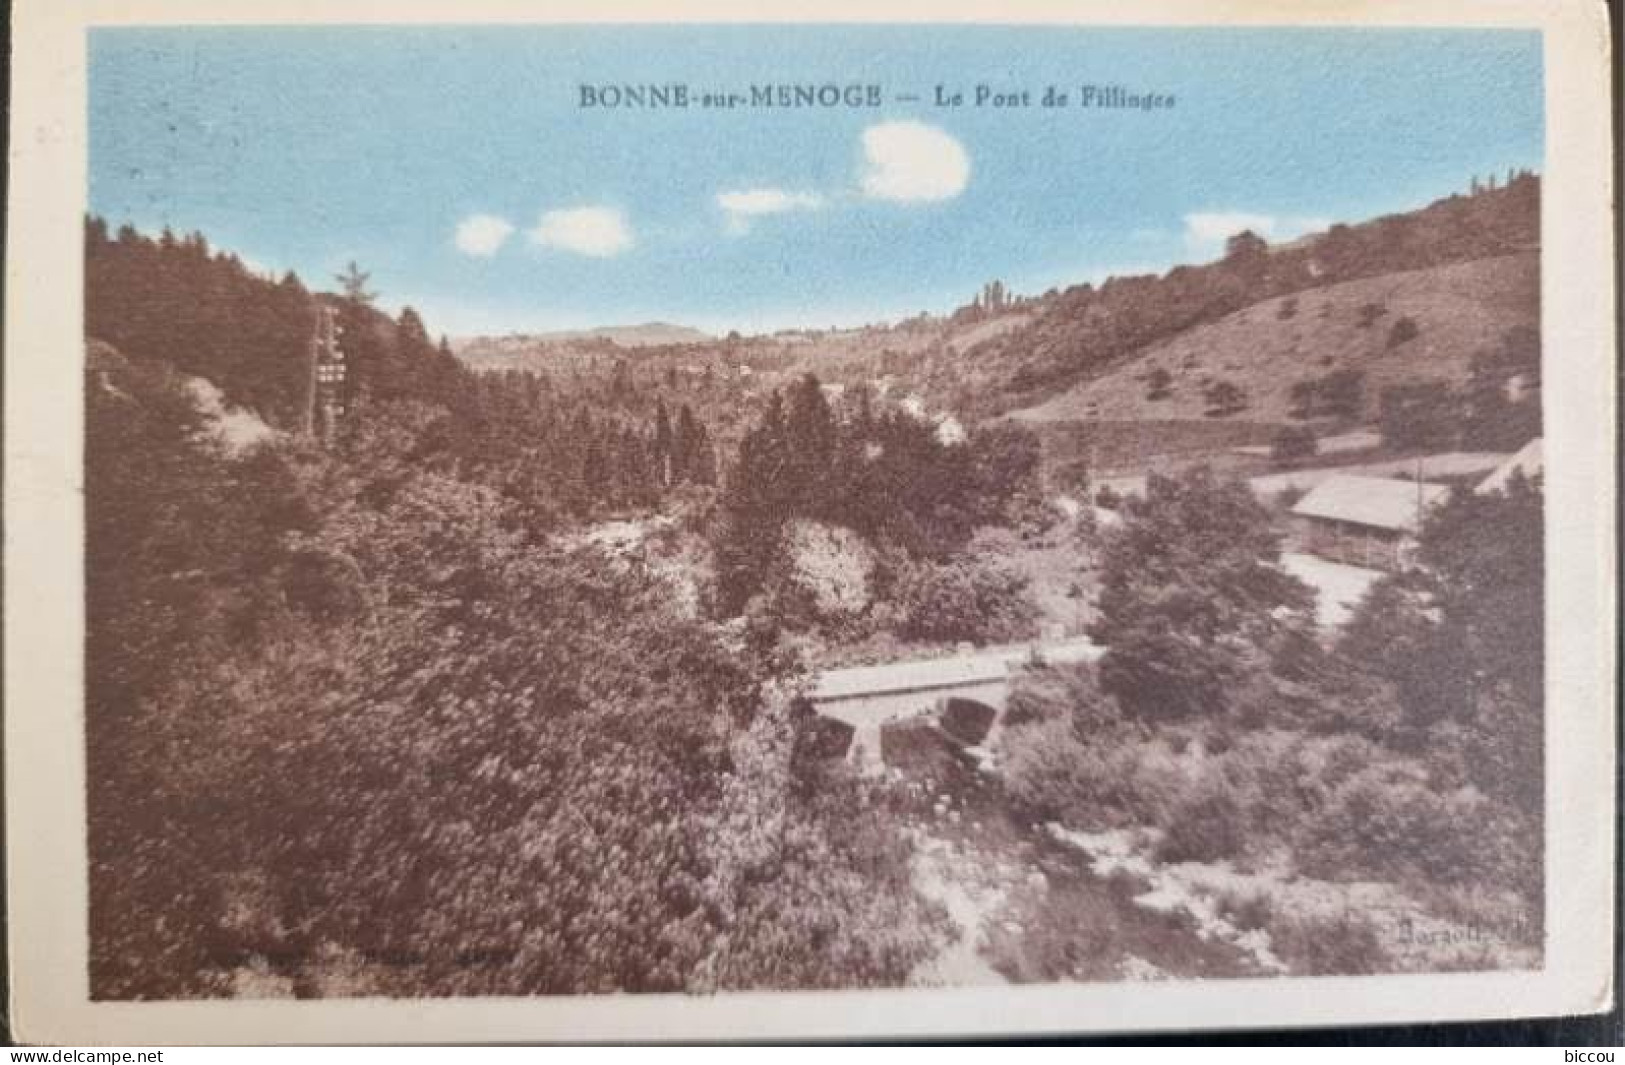 Cp BONNE SUR MENOGE 74 - Le Pont De Fillinges - Bonne